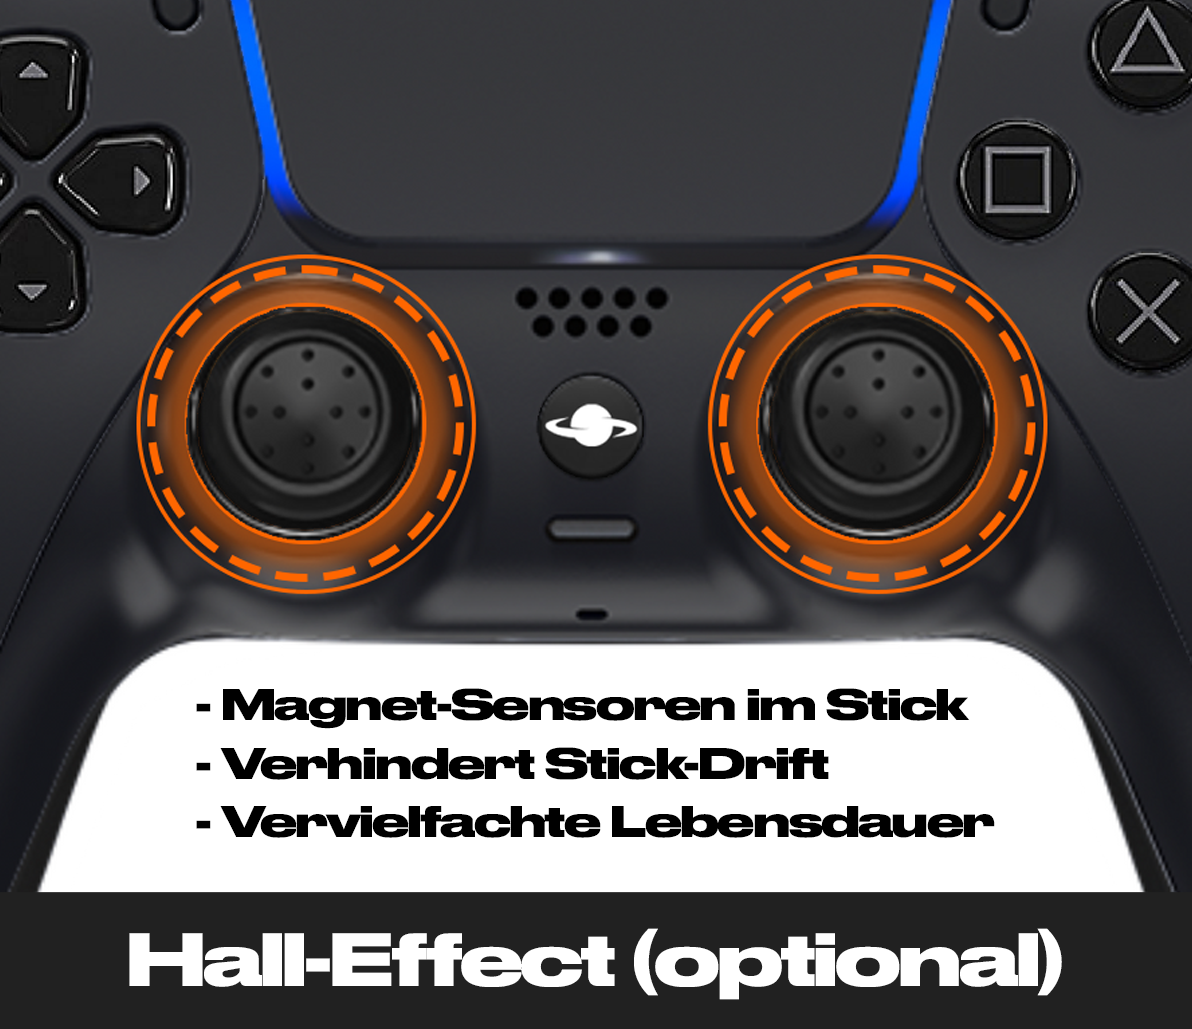 PS5 Custom Controller 'Holz'